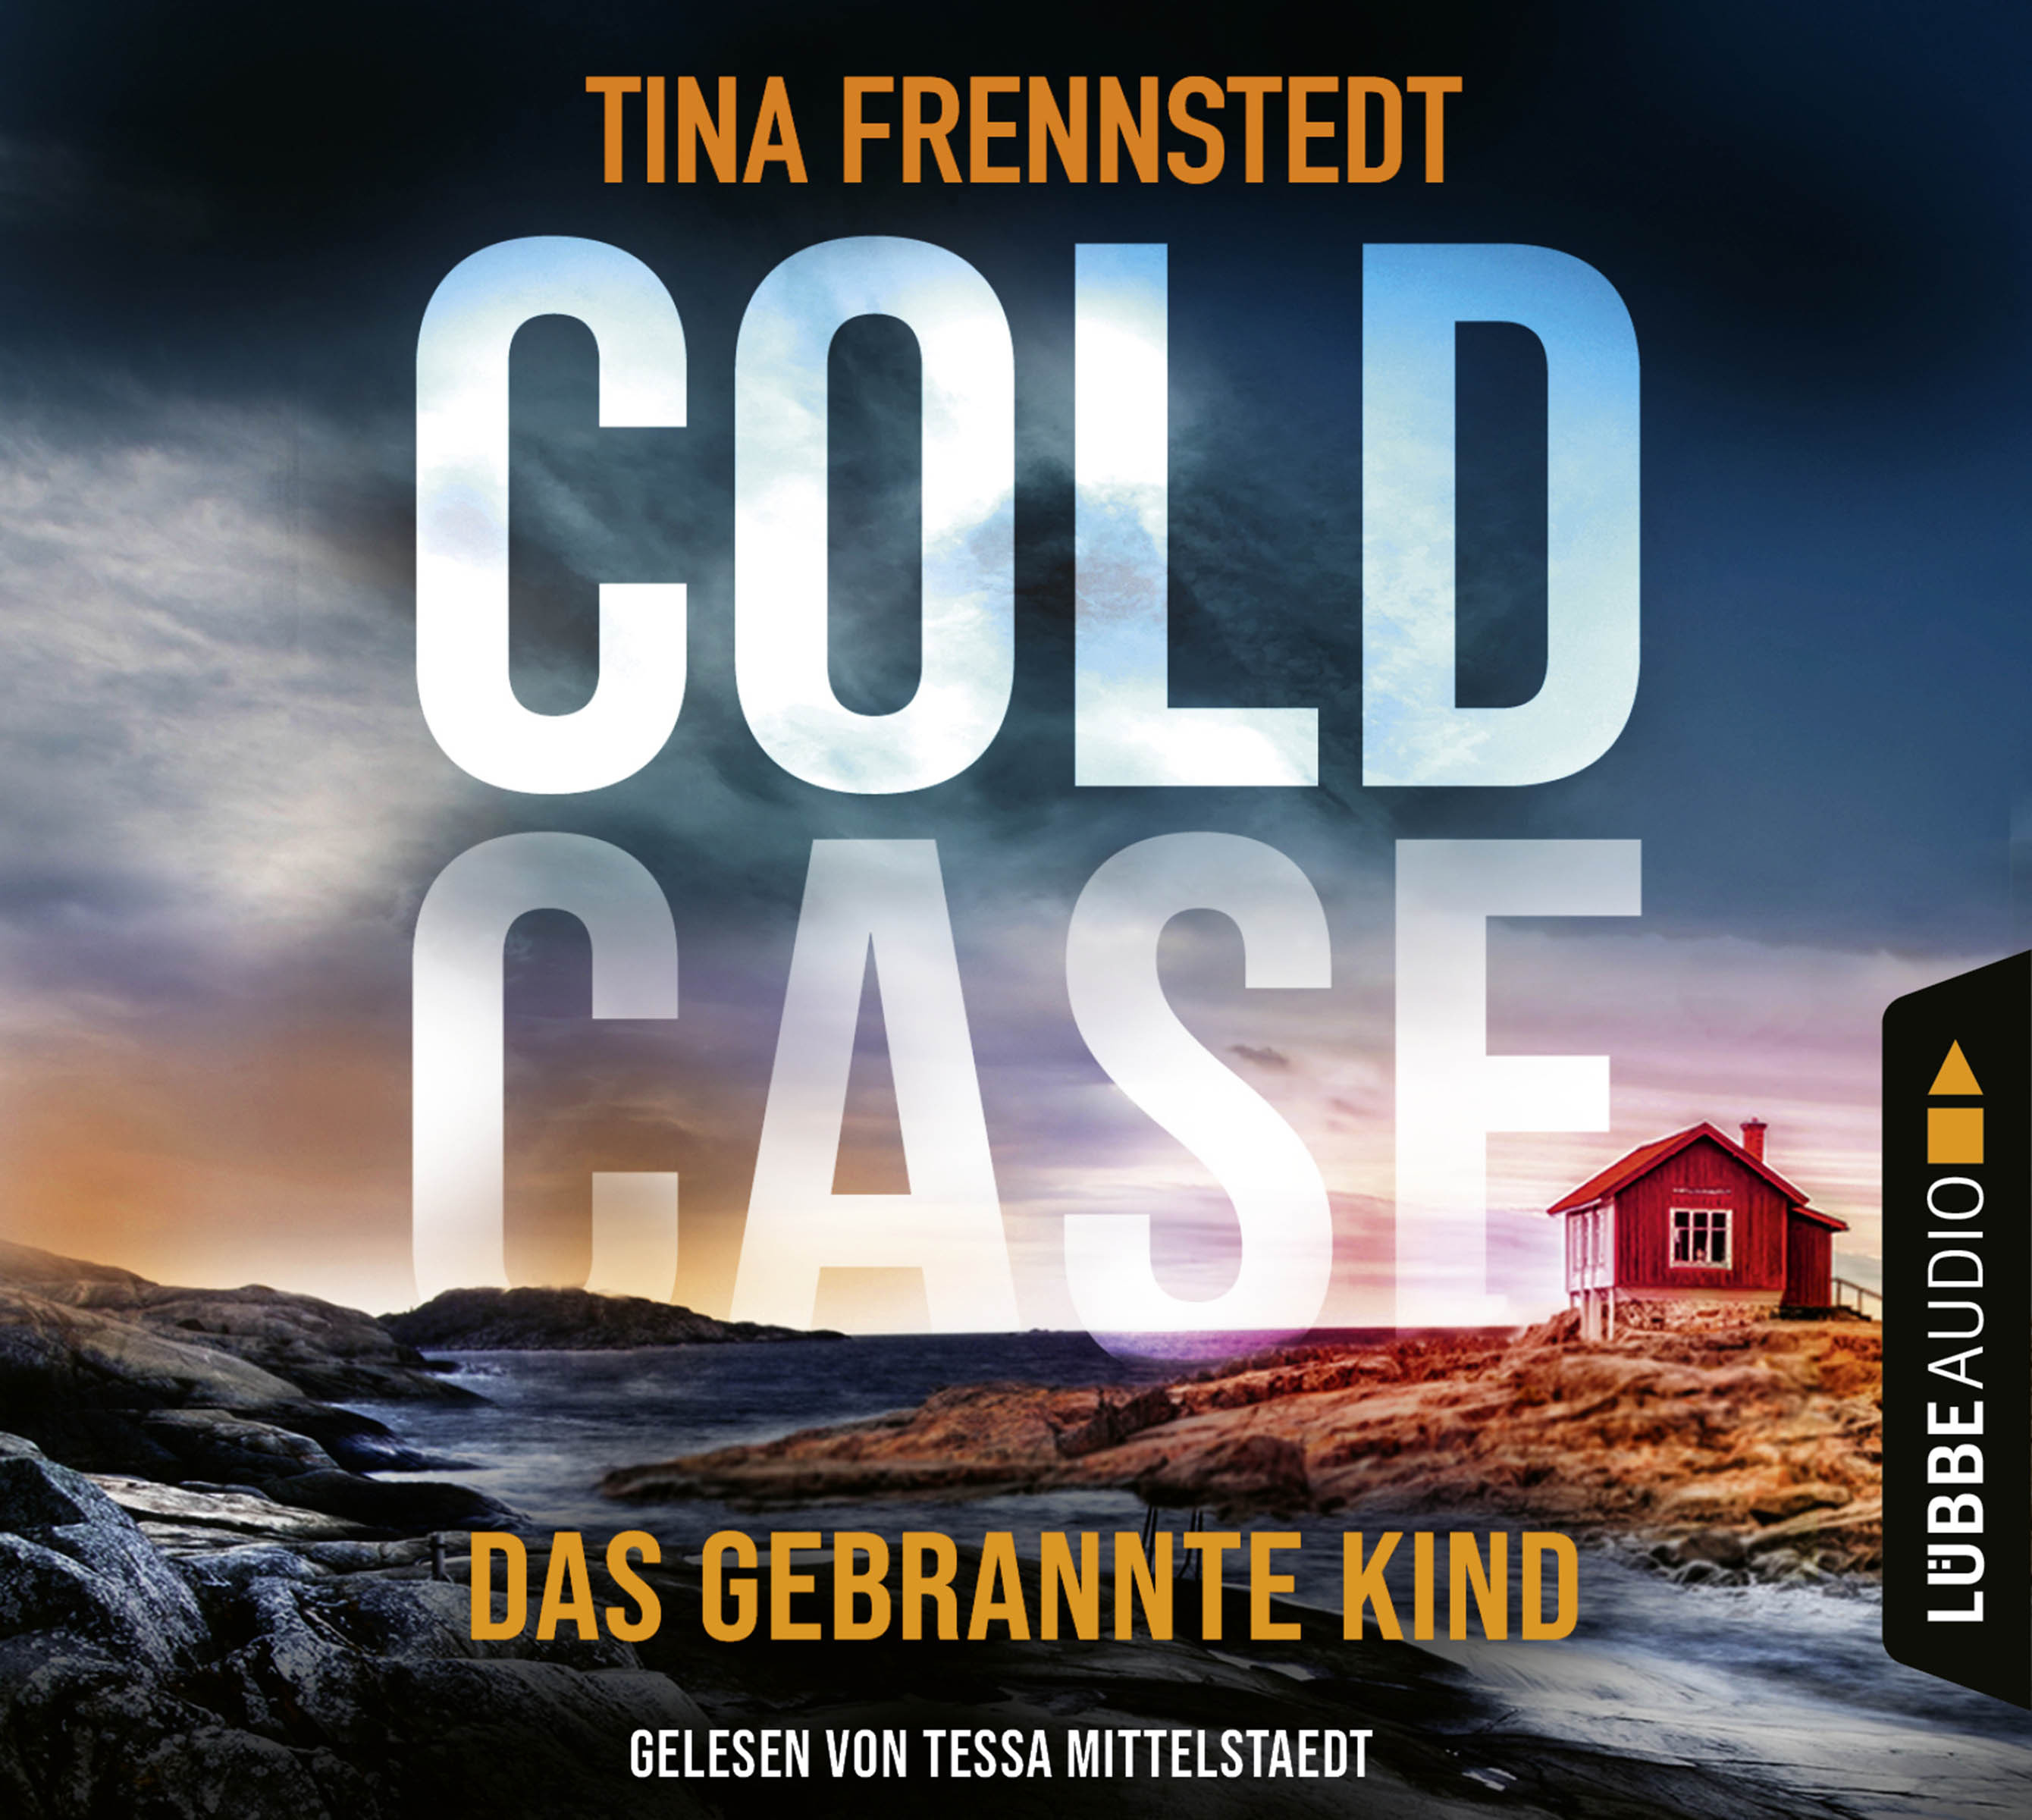 Cold Case - Das gebrannte Kind